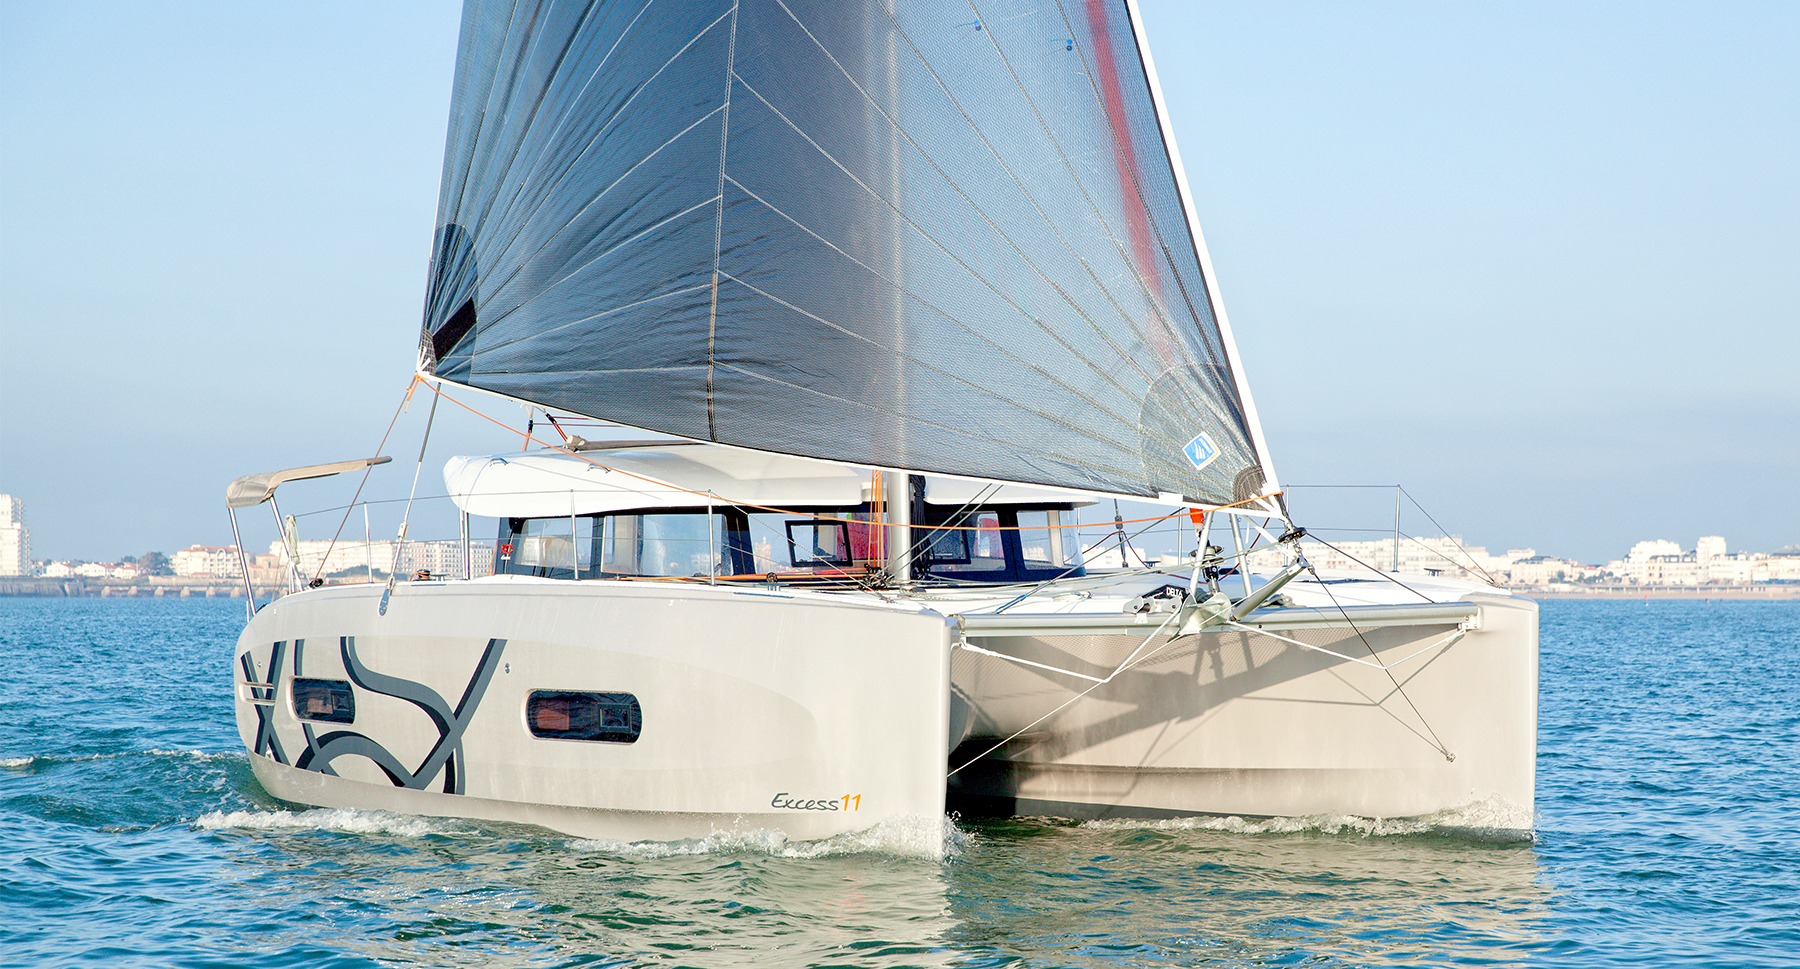 XCS1137' Excess Catamaran 2020